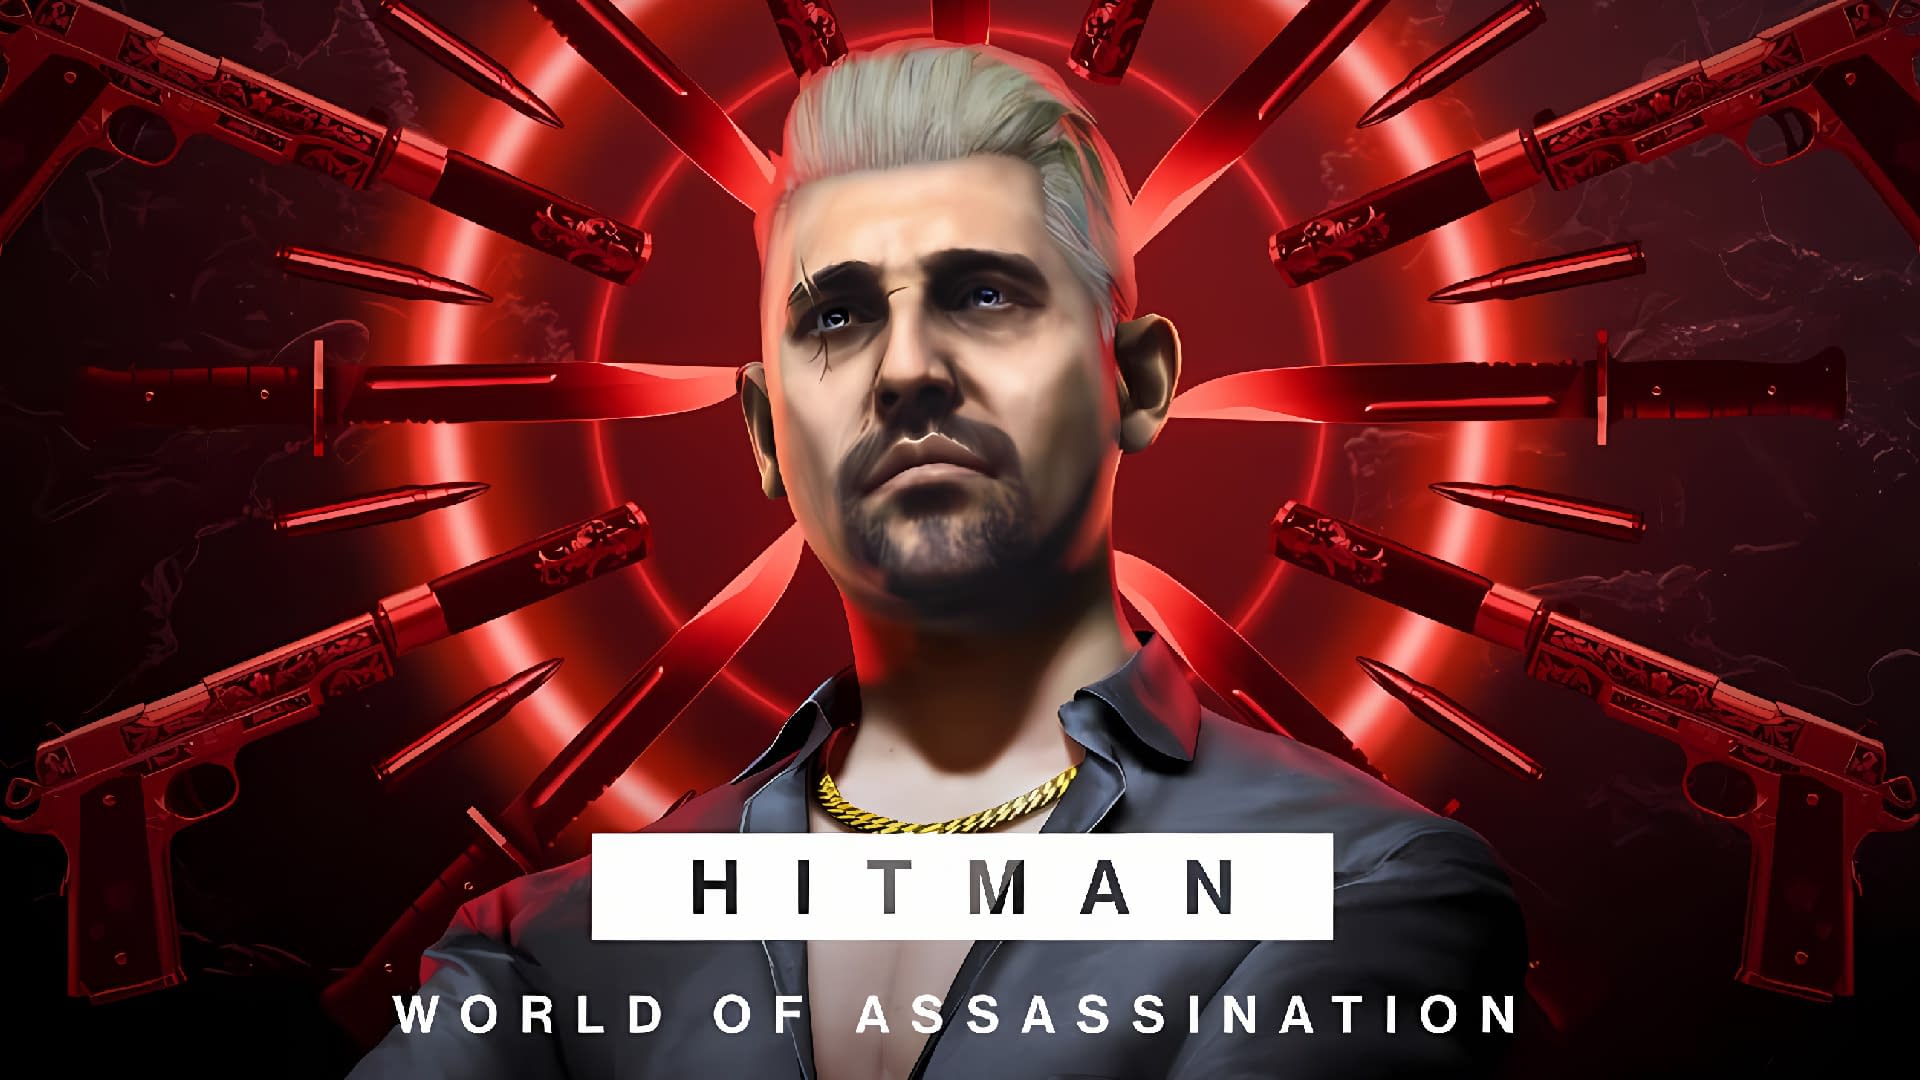 Steam Community :: Guide :: Hitman World of Assassination – Full